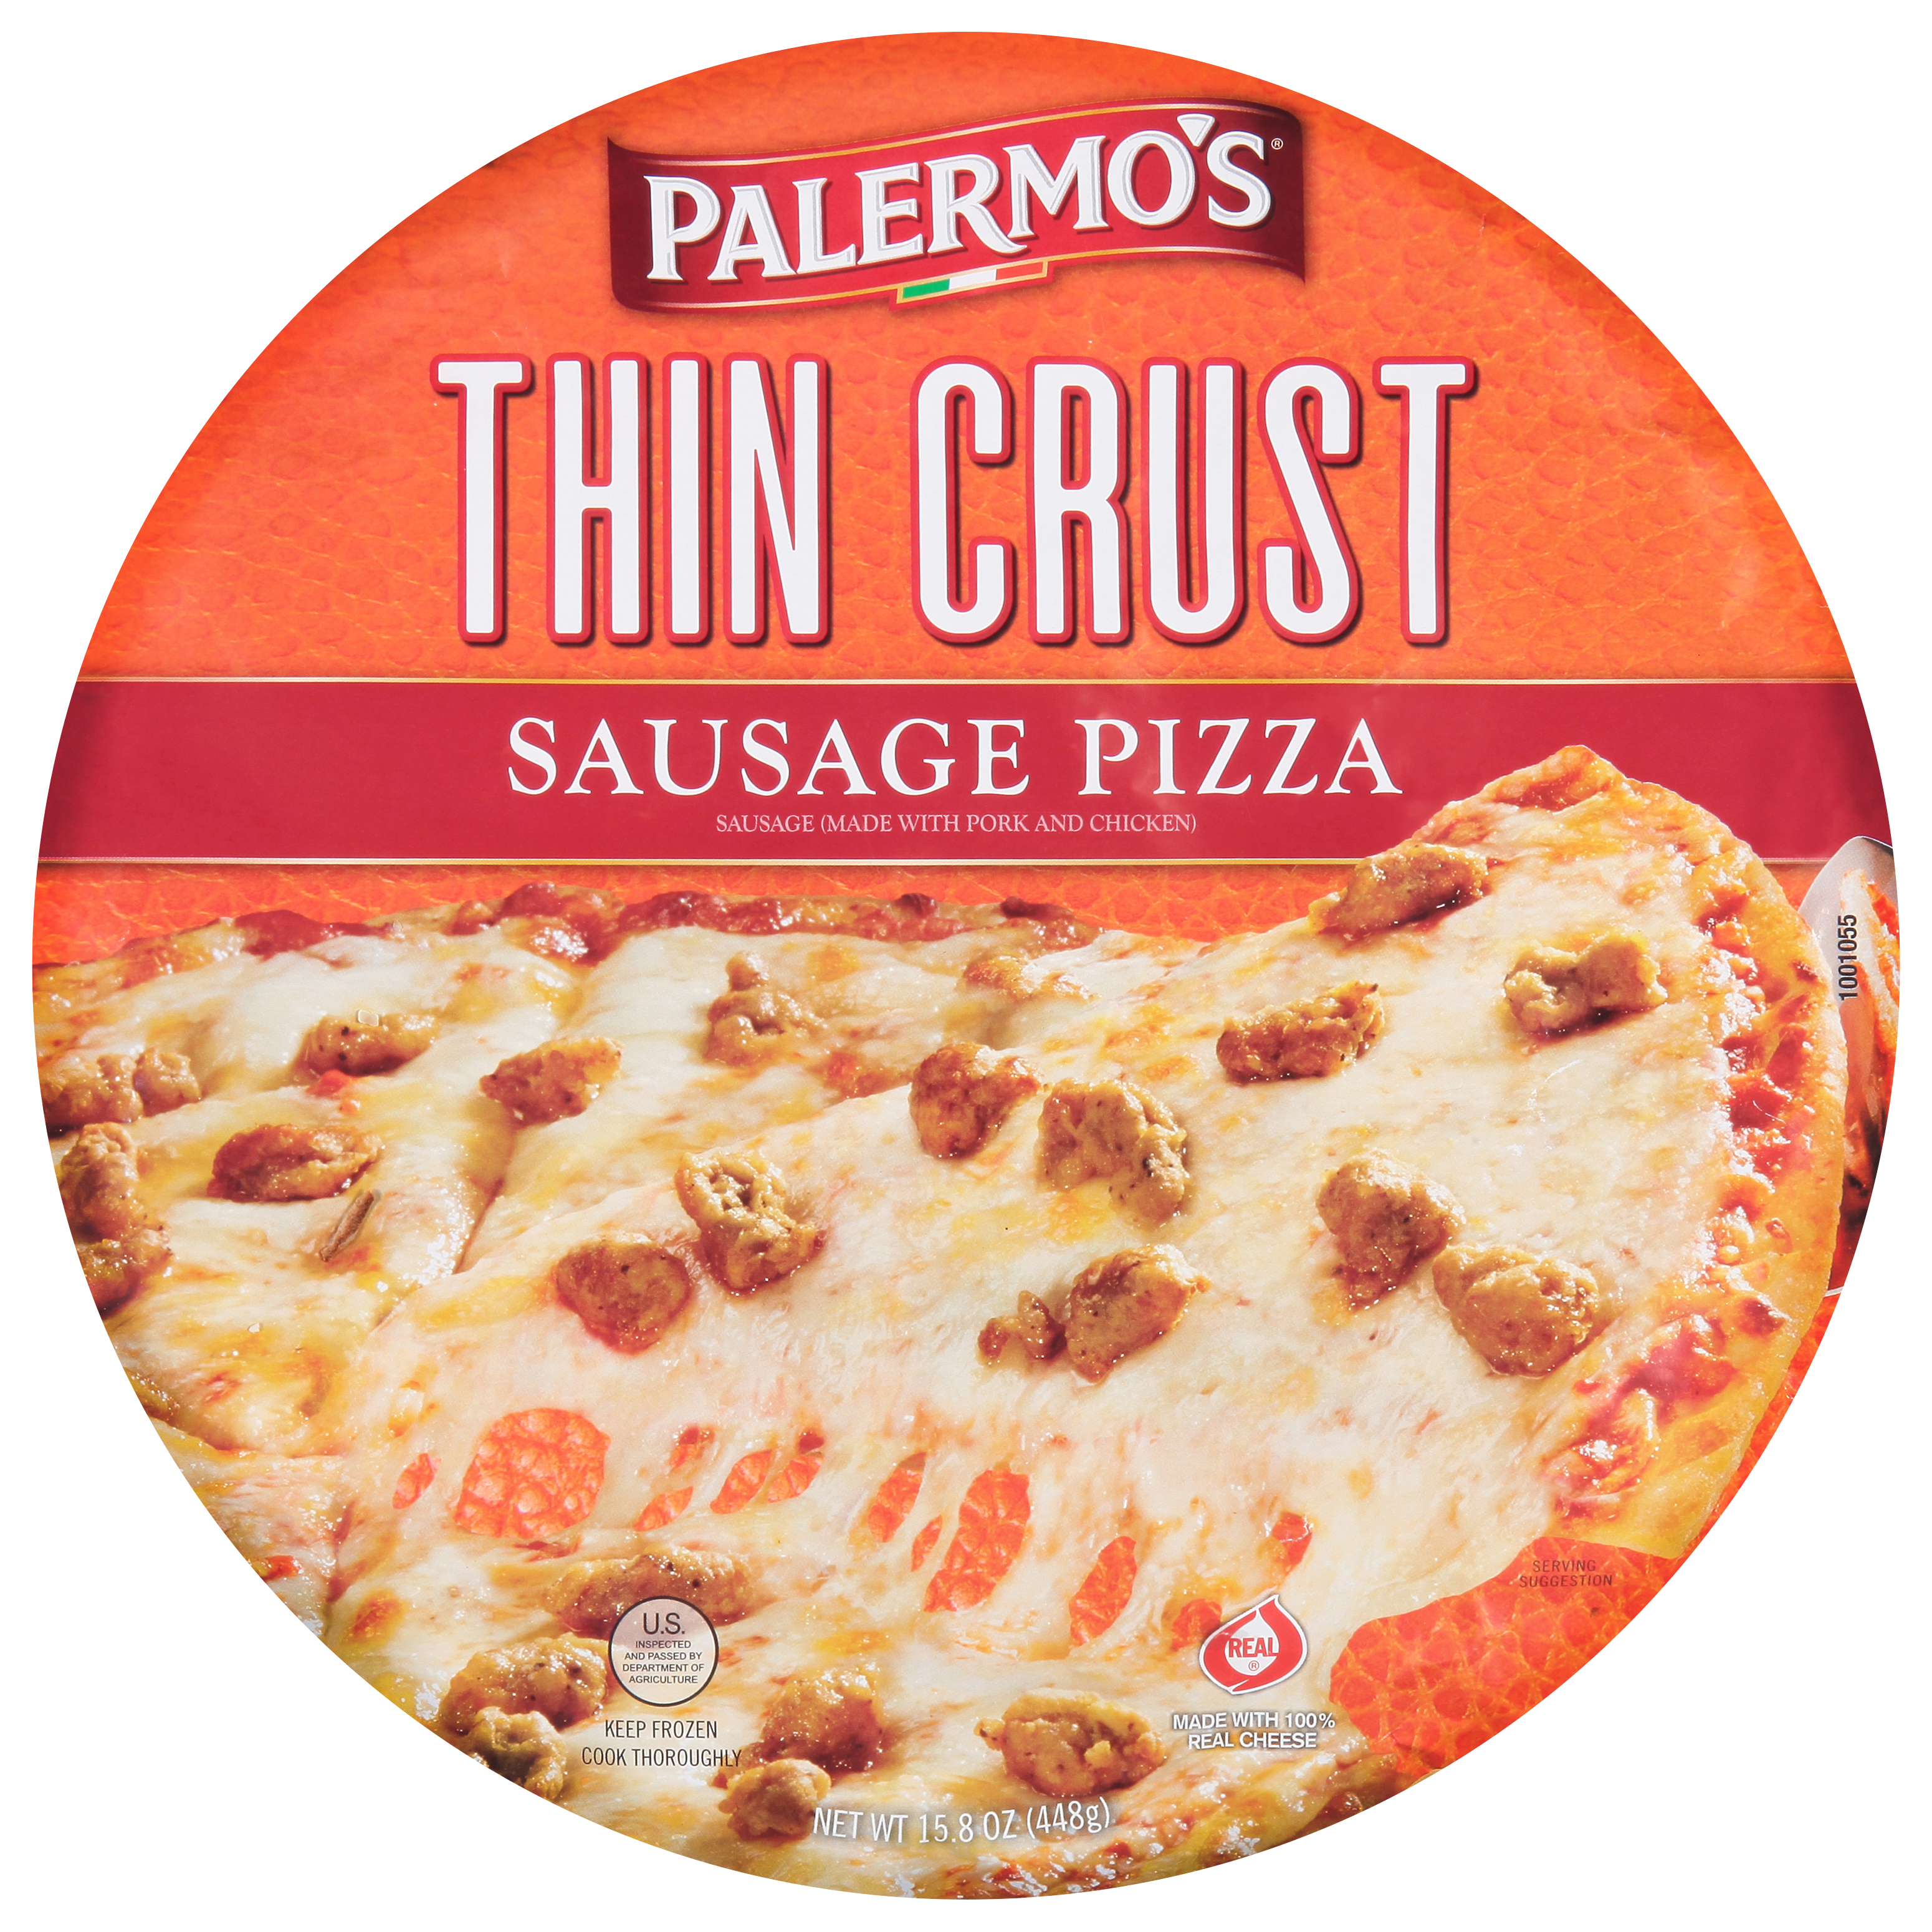 Palermo's Thin Crust Sausage Pizza 12 units per case 15.4 oz